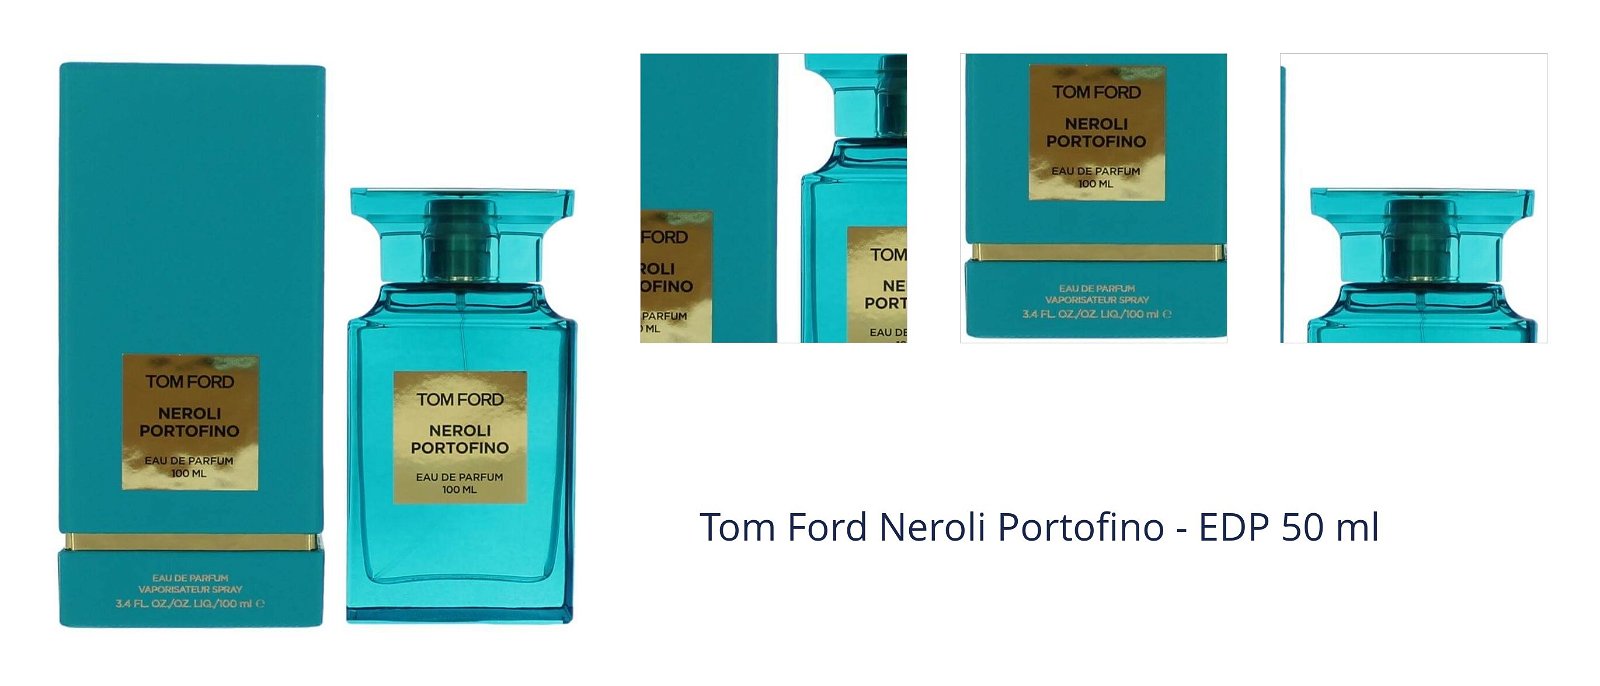 Tom Ford Neroli Portofino - EDP 50 ml 7